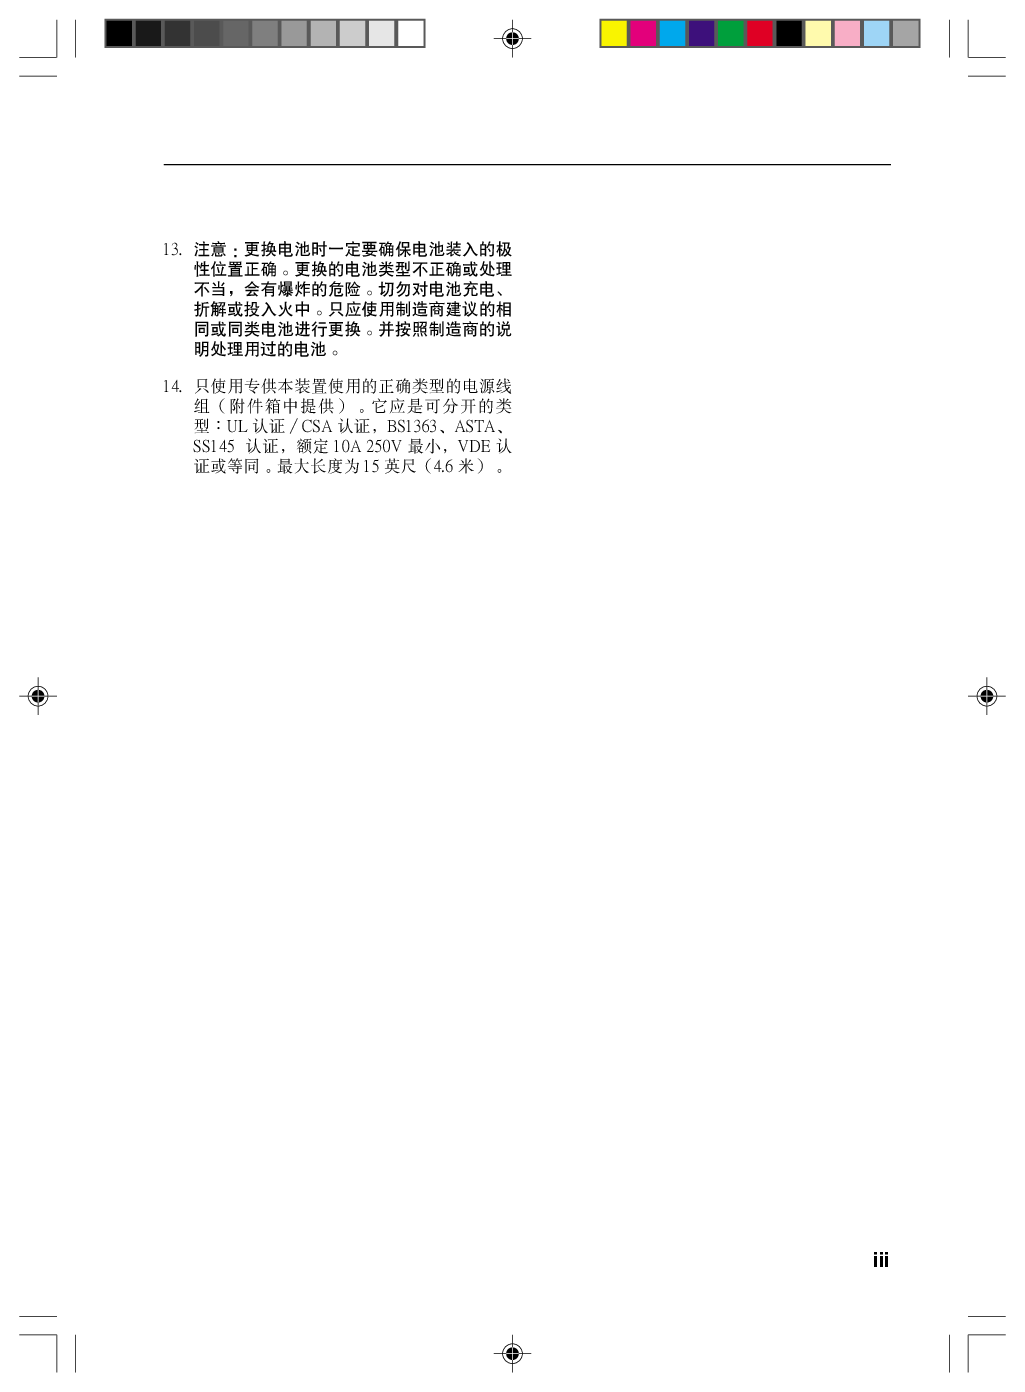 富士通 Fujitsu LifeBook V1010 Windows XP 使用说明书 第2页